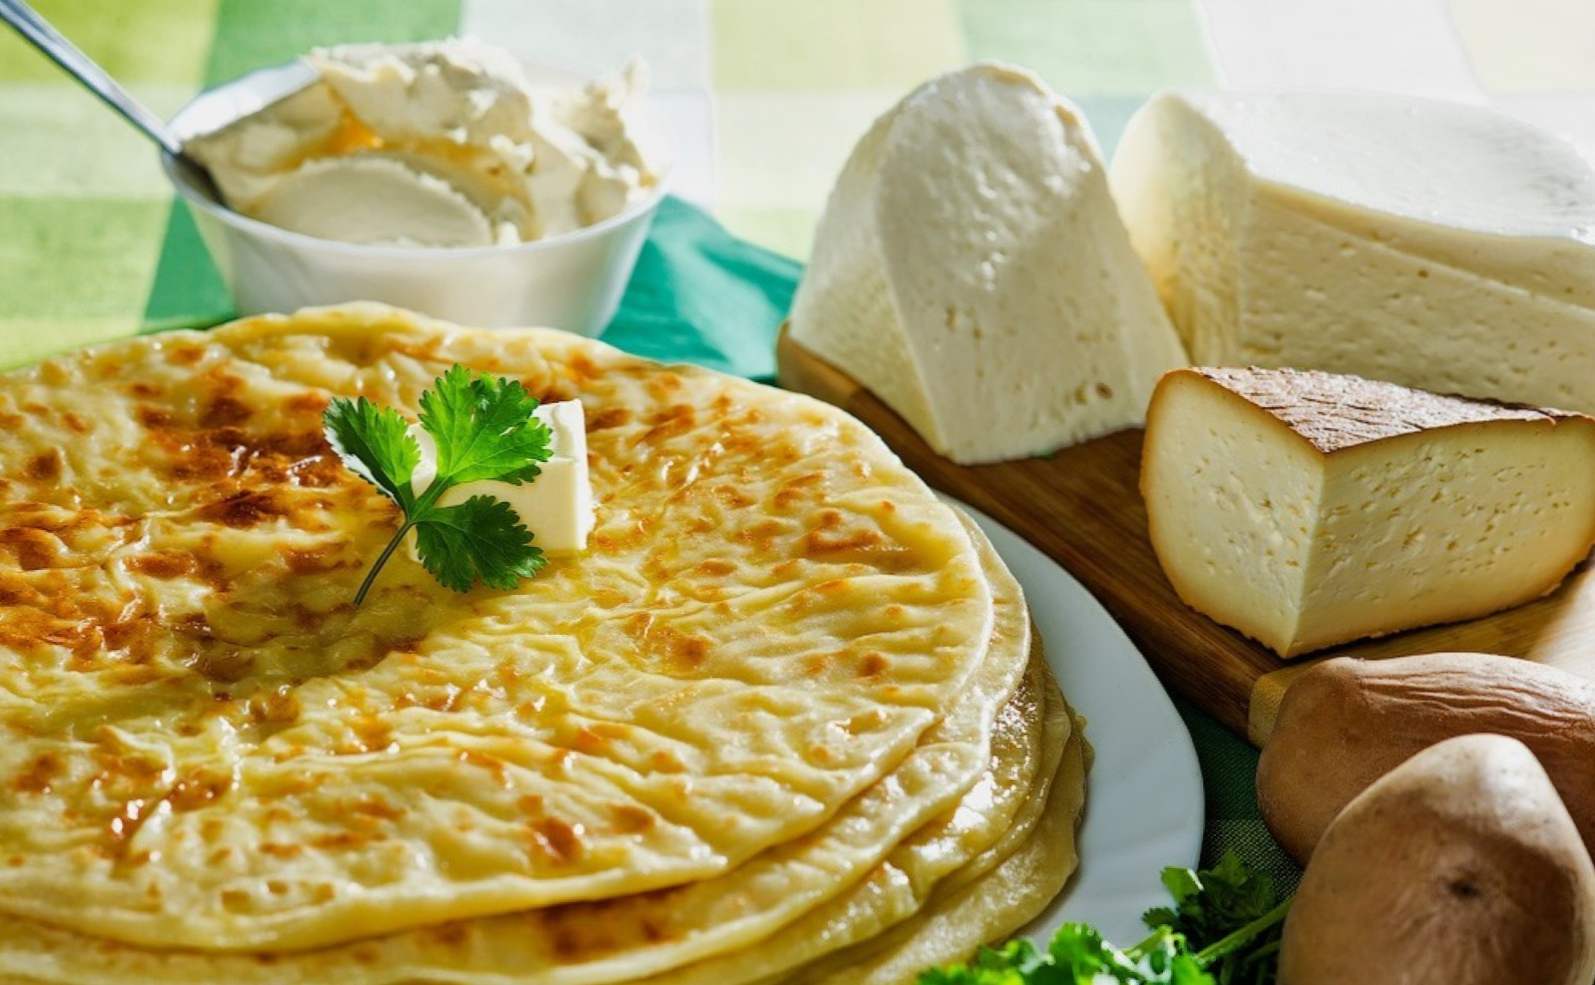 Khychyny so syrom a zemiakmi - 7 krok za krokom recepty